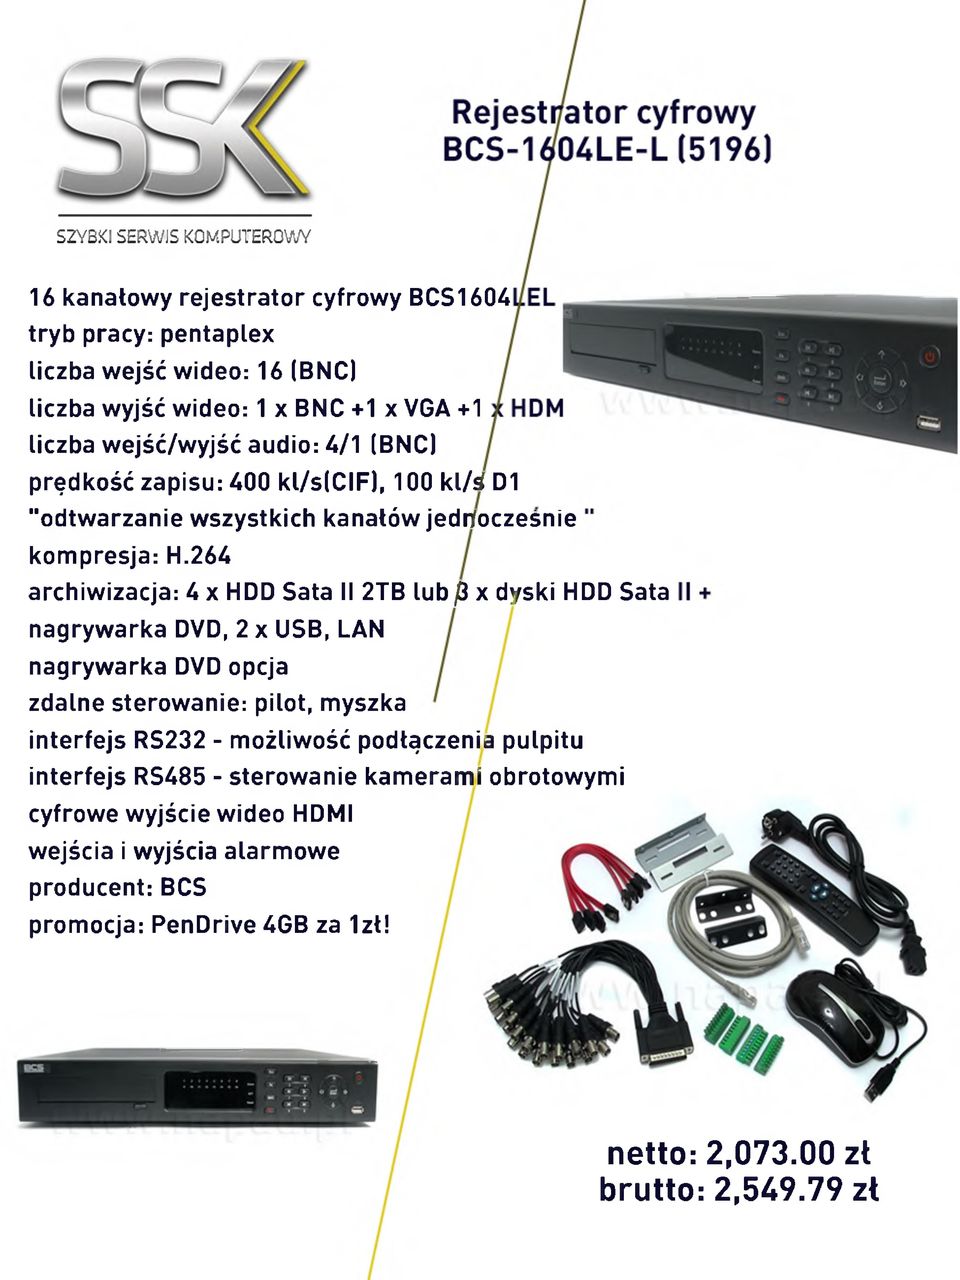 264 archiwizacja: U x HDD Sata II 2TB lub fi x dyski HDD Sata nagrywarka DVD, 2 x USB, LAN nagrywarka DVD opcja zdalne sterowanie: pilot, myszka interfejs RS232 -